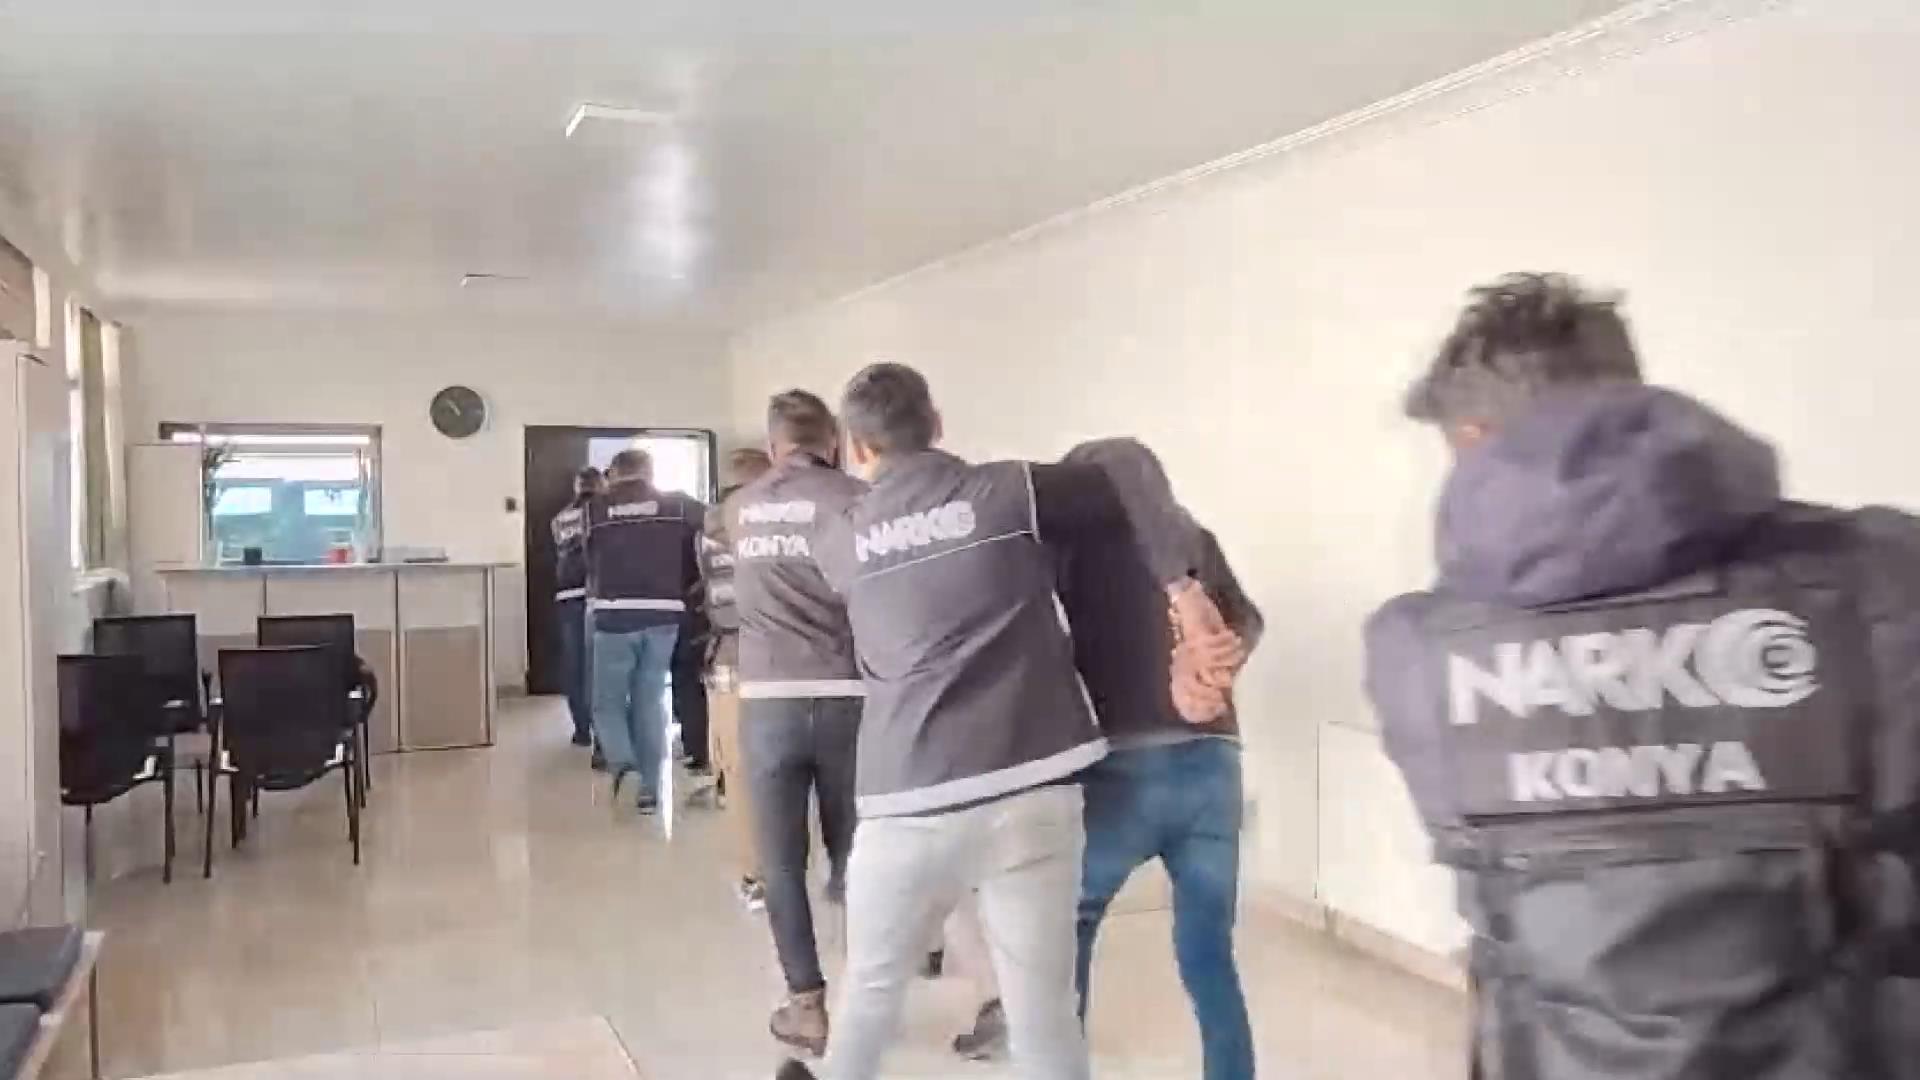 Konya’da Uyuşturucu Baskını: 5 Kişi Cezaevine, 5 Kişi Serbest